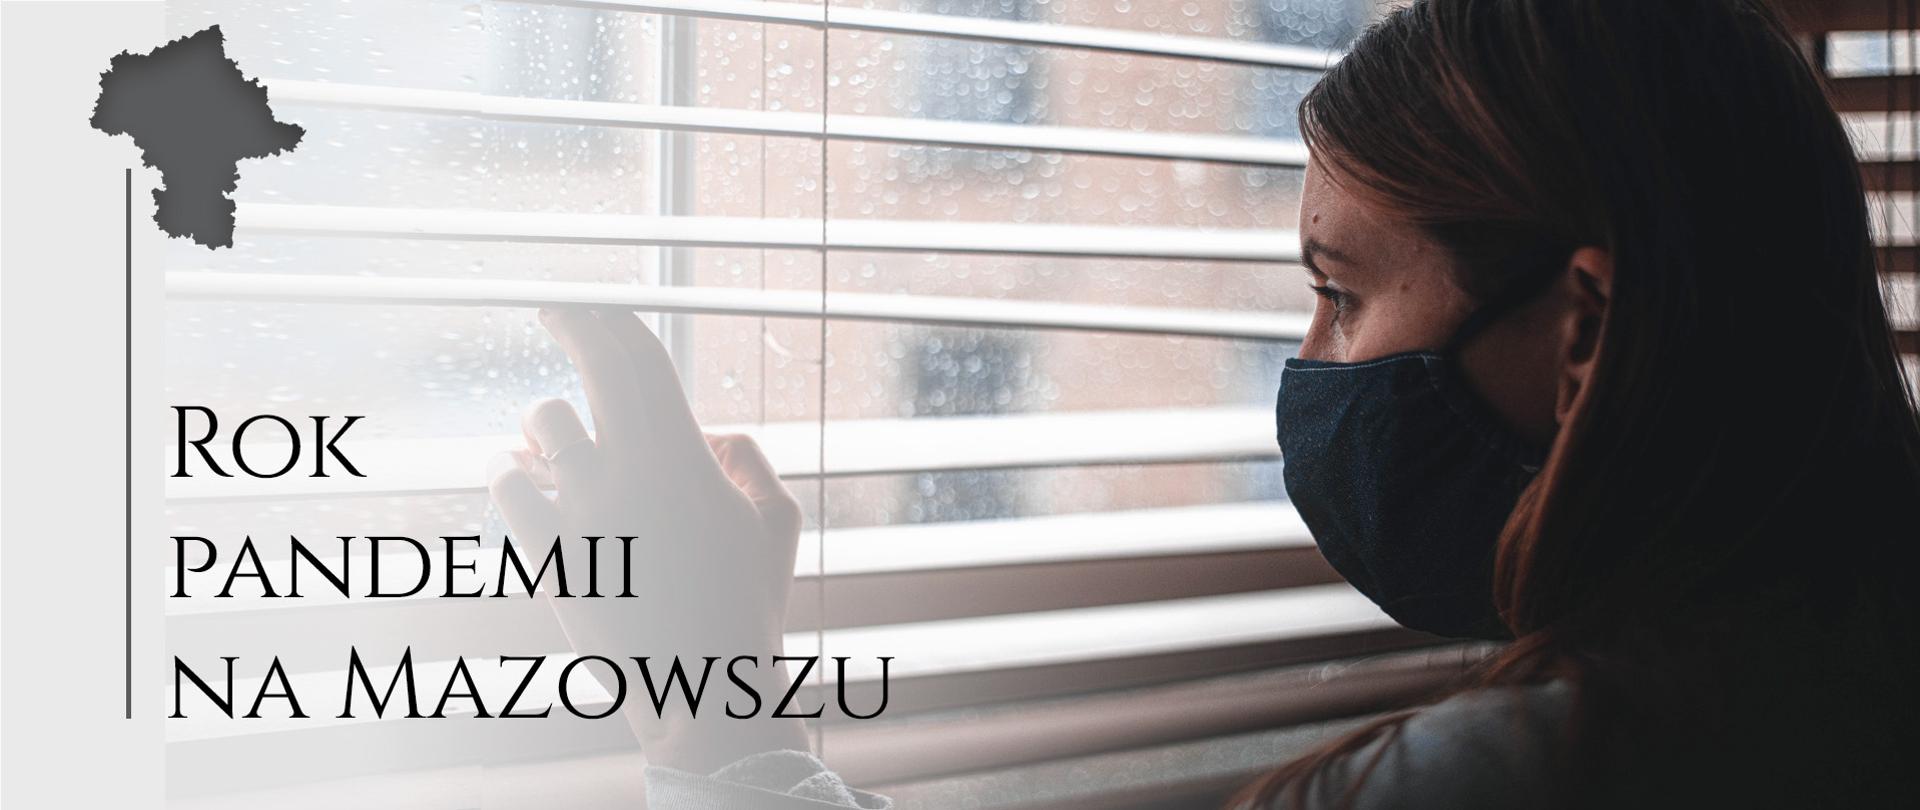 Kobieta w maseczce rozszerza żaluzje w oknie aby wyjrzeć na zewnątrz. Za oknem pada deszcz. Napis: Rok pandemii na Mazowszu oraz mała mapka Mazowsza.